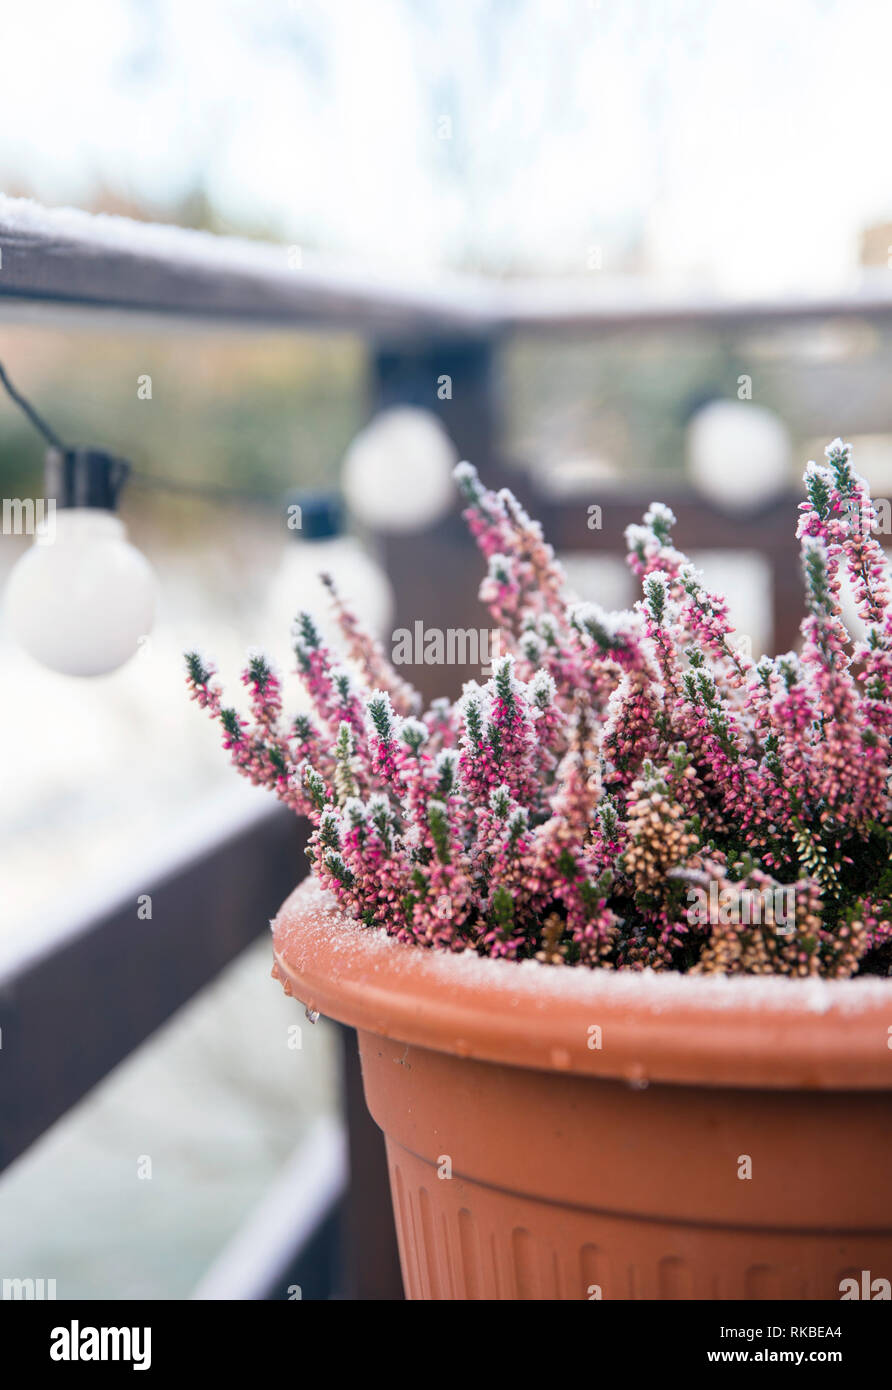 Rosa Heidekraut Blume wächst in Terracotta Farbe Garten Topf, draußen auf der Terrasse im Winter, bedeckt mit White Frost. Stockfoto